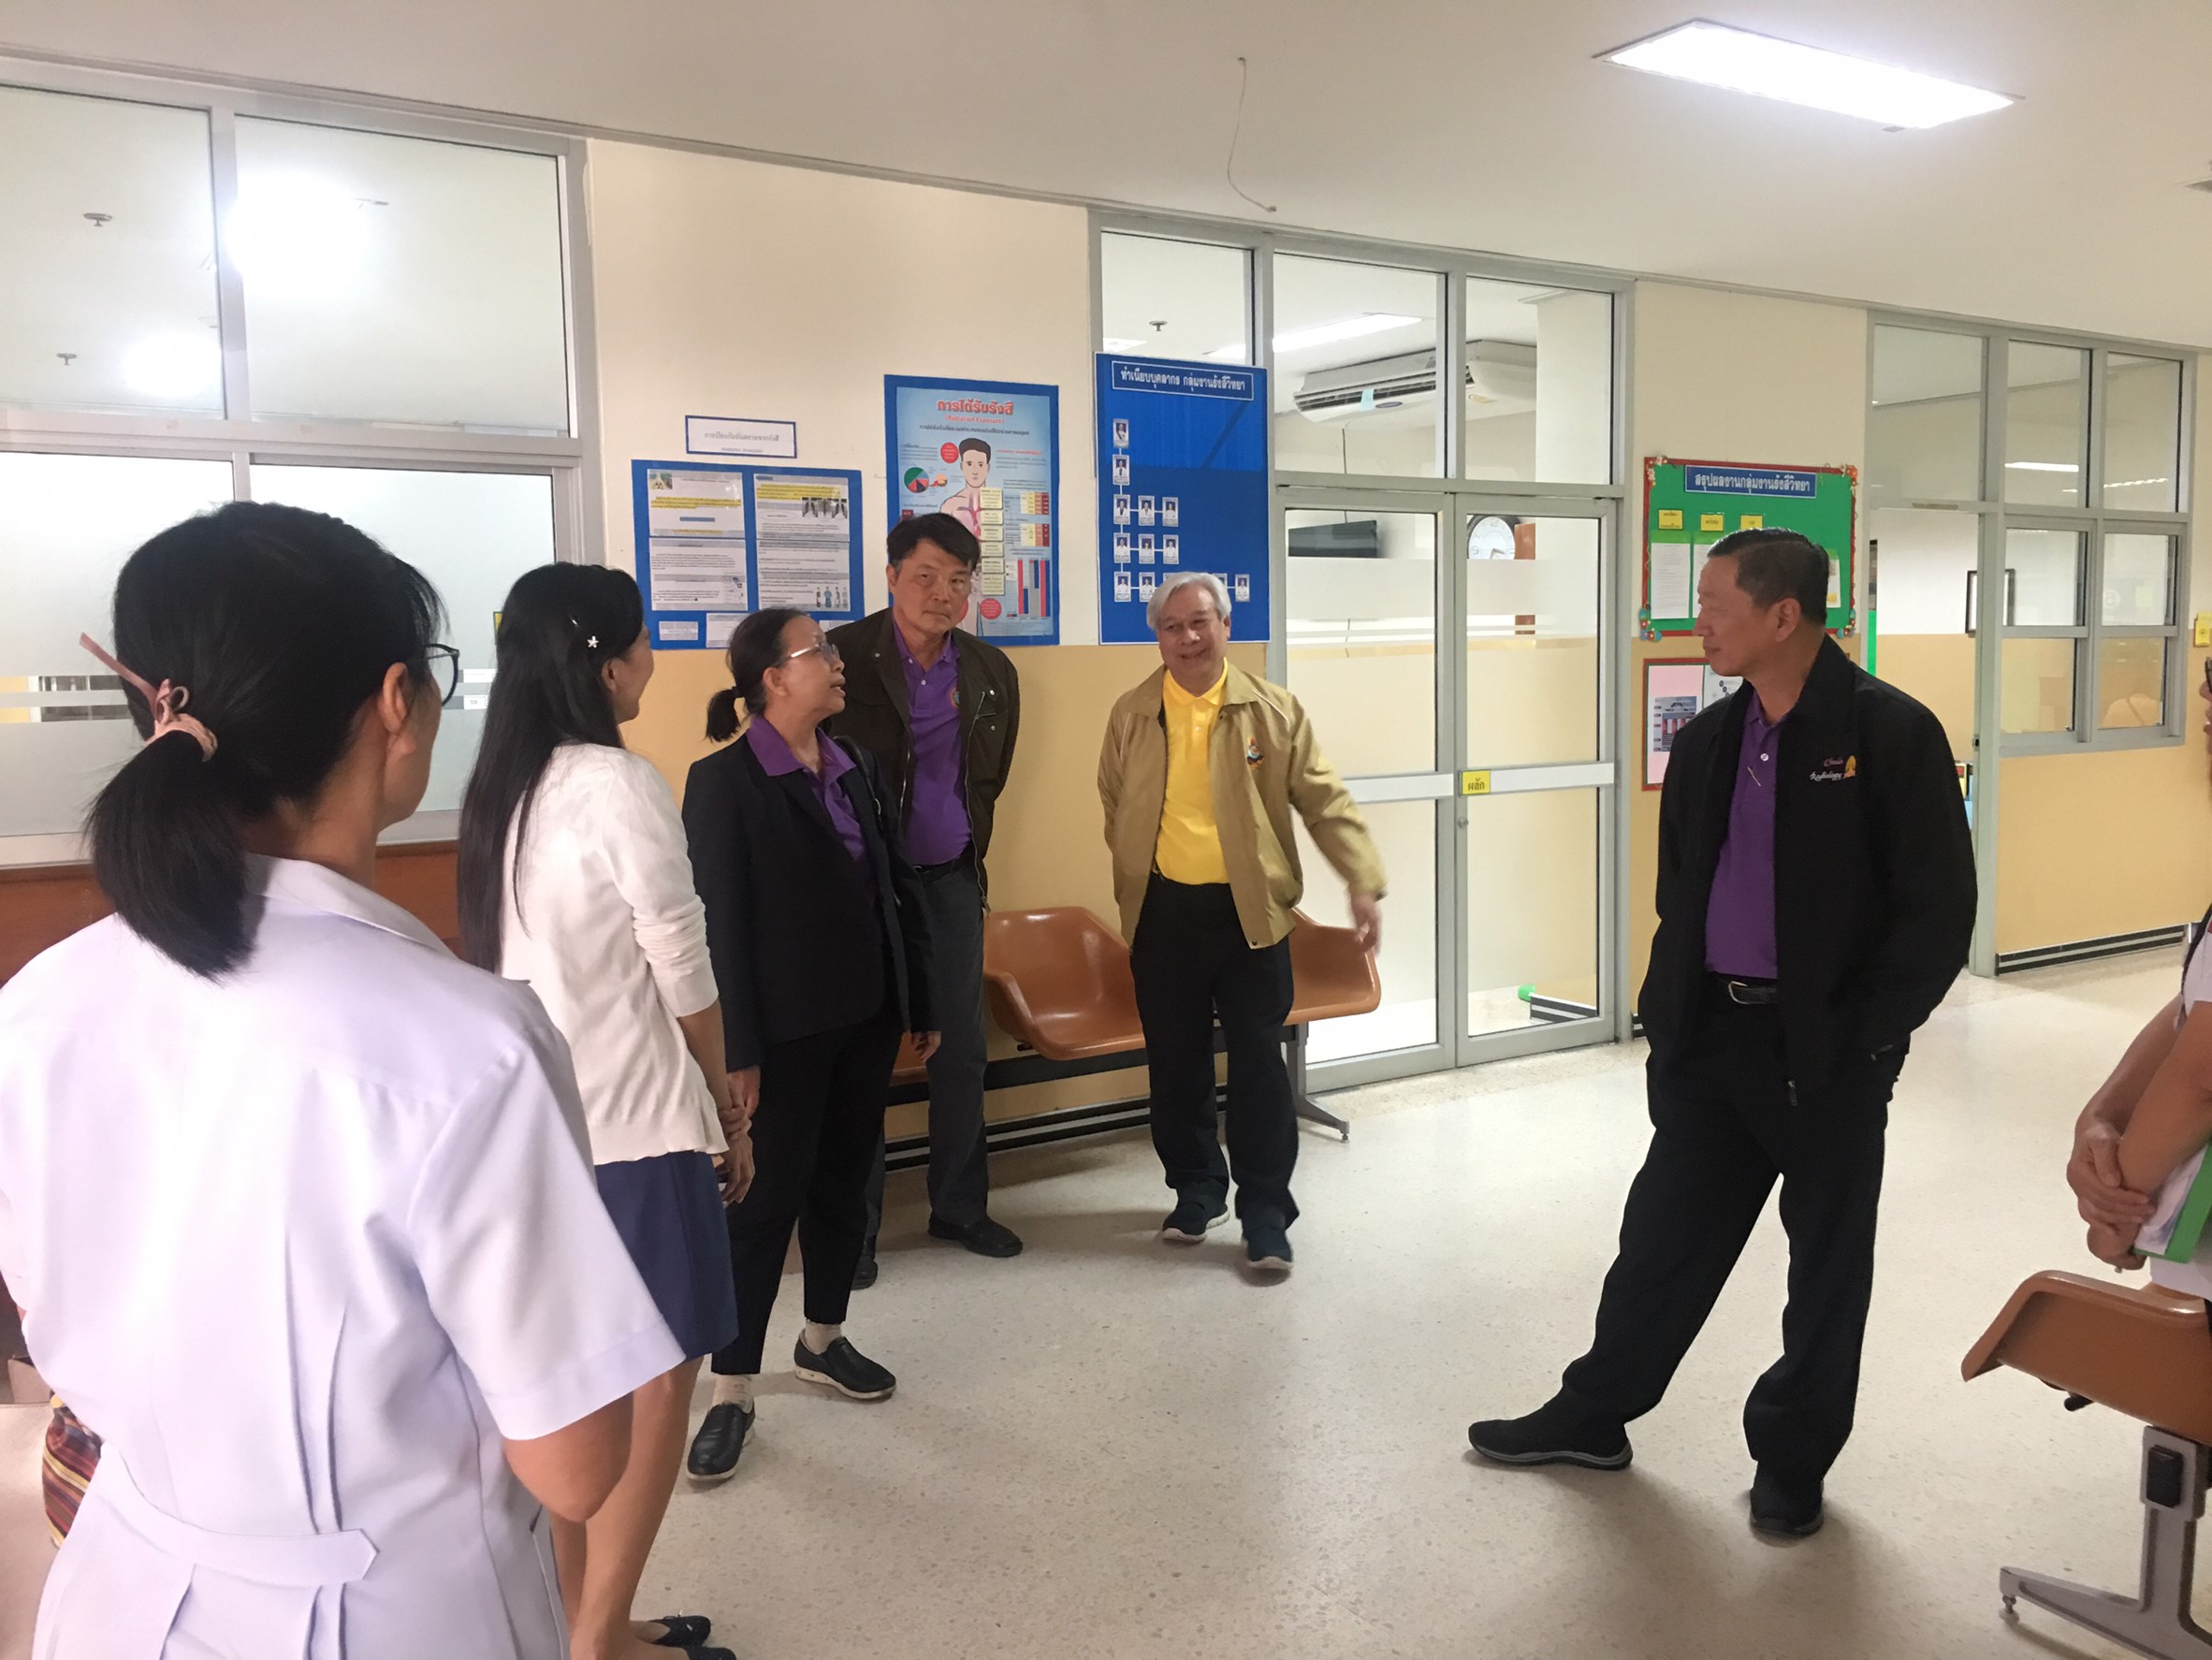 ประชุมวิชาการร่วมกับรังสีการแพทย์แห่งประเทศไทย ครั้งที่17 27-29 พ.ย. - พร้อมเข้าเยี่ยมและให้กำลังใจหน่วยงานรังสีวิทยาในพื้นที่จังหวัดอุบลราชธานีระหว่างวันที่ 25-26 พฤศจิกายน 2562 67